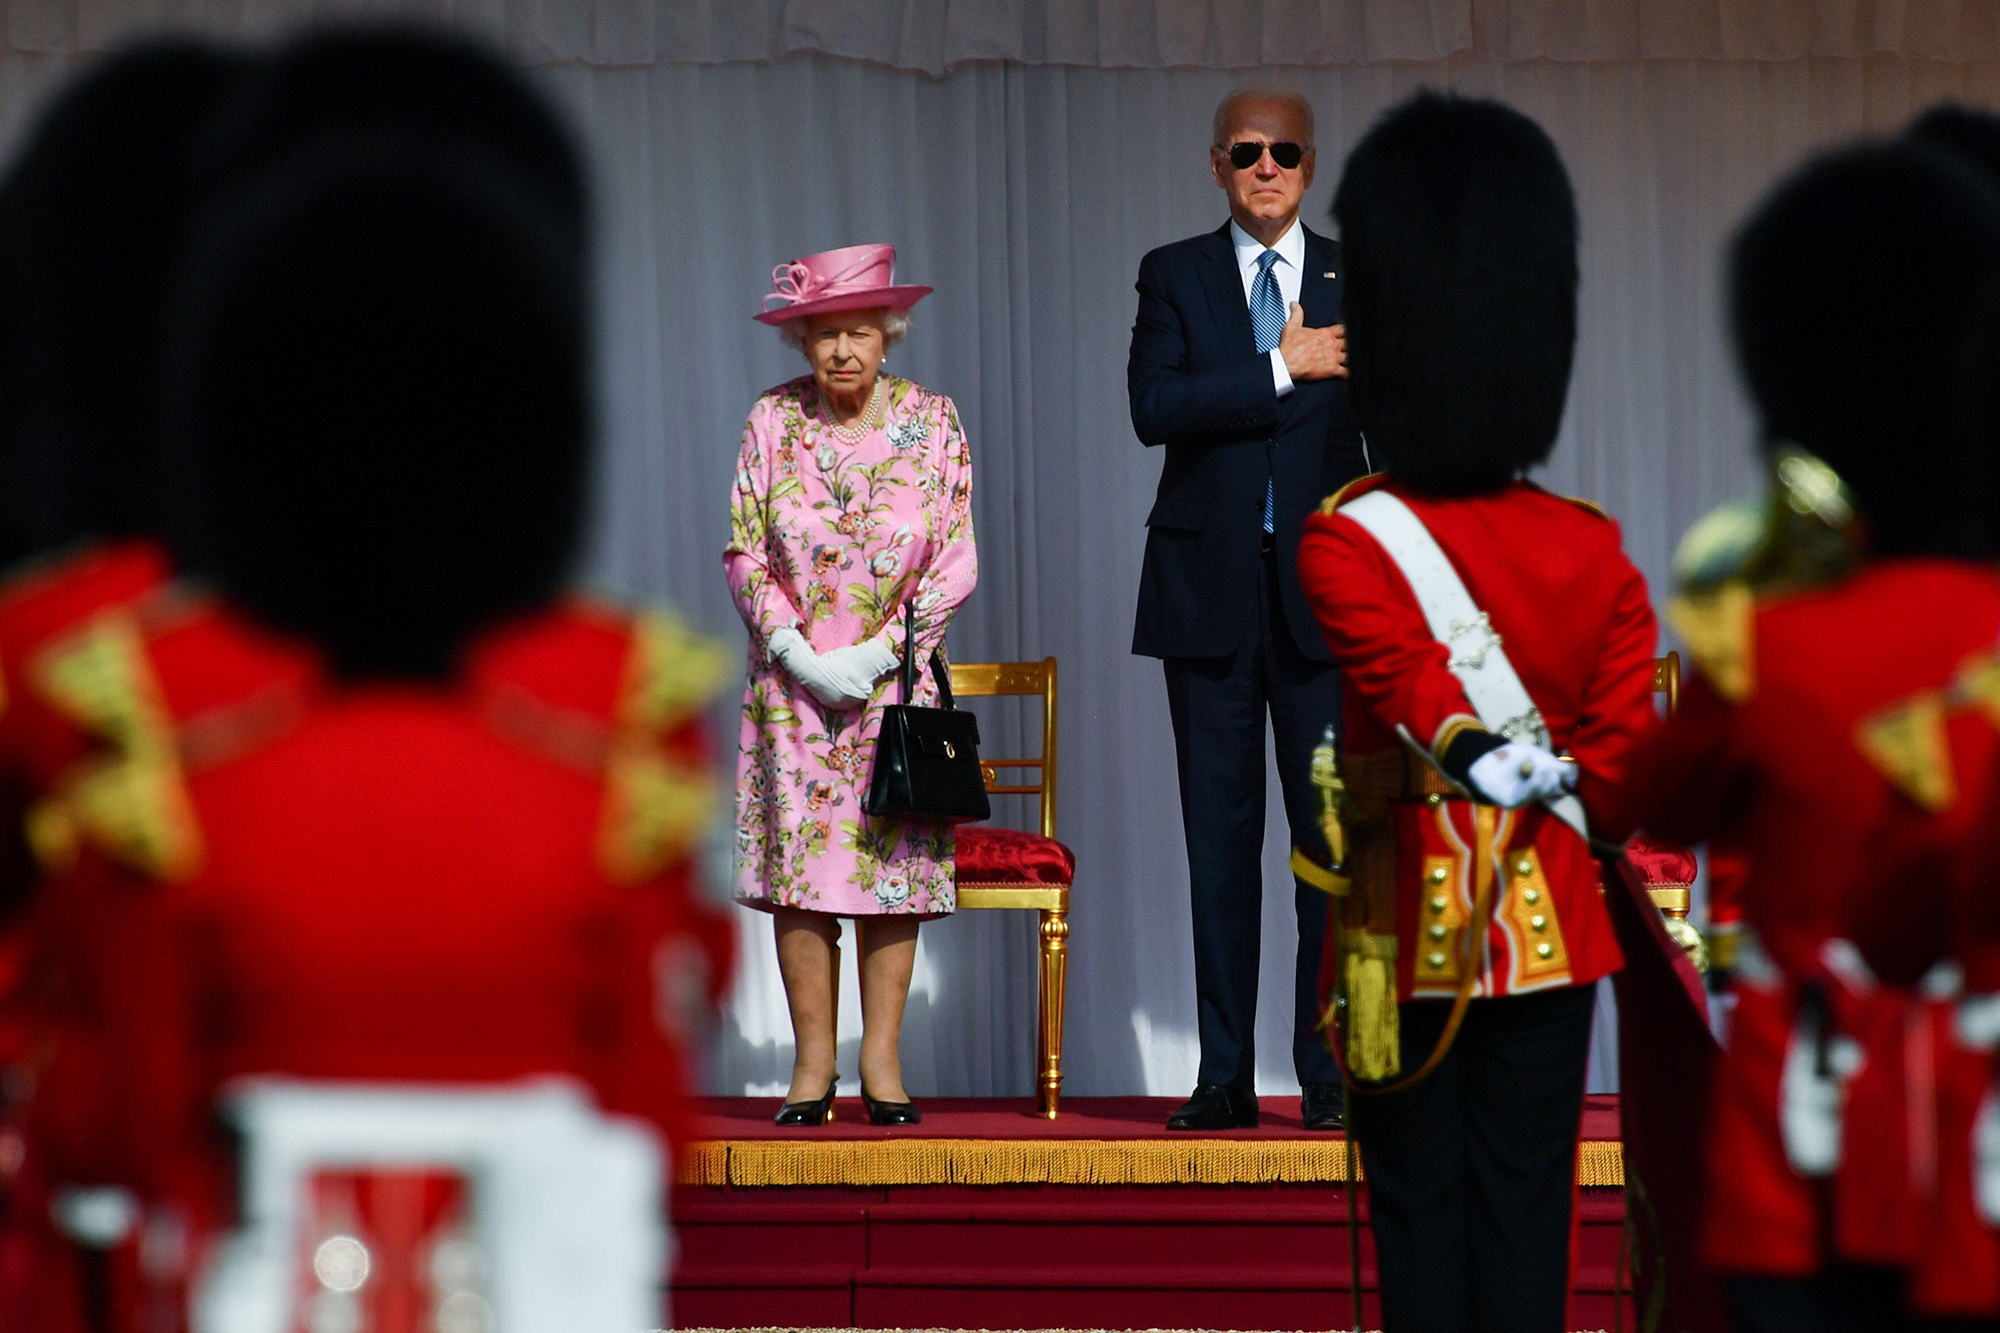 Queen Elizabeth Meets the Presidents